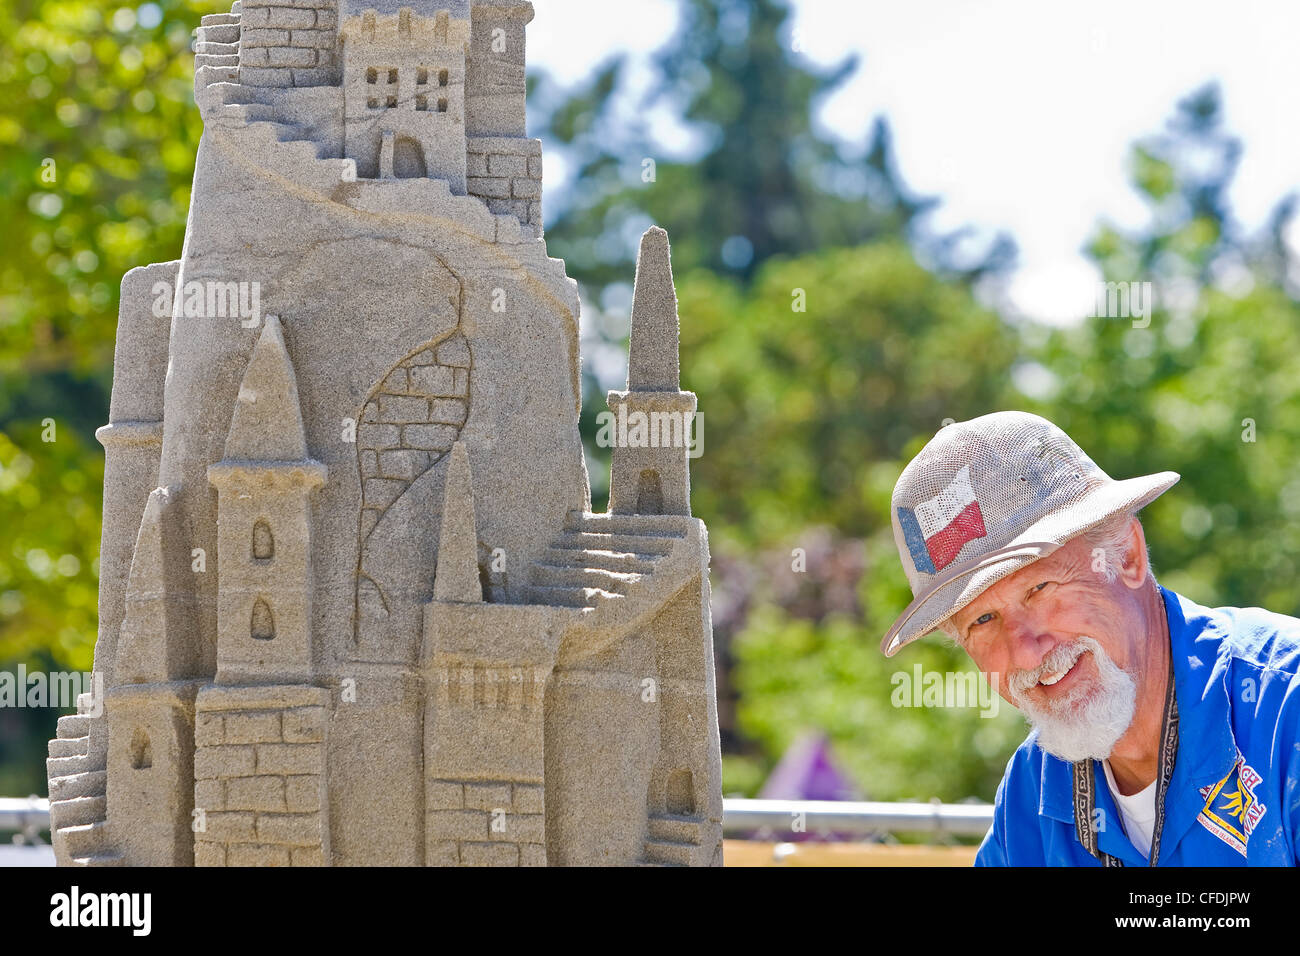 Castello di sabbia concorrente la scultura di sabbia annuale di Foto Stock